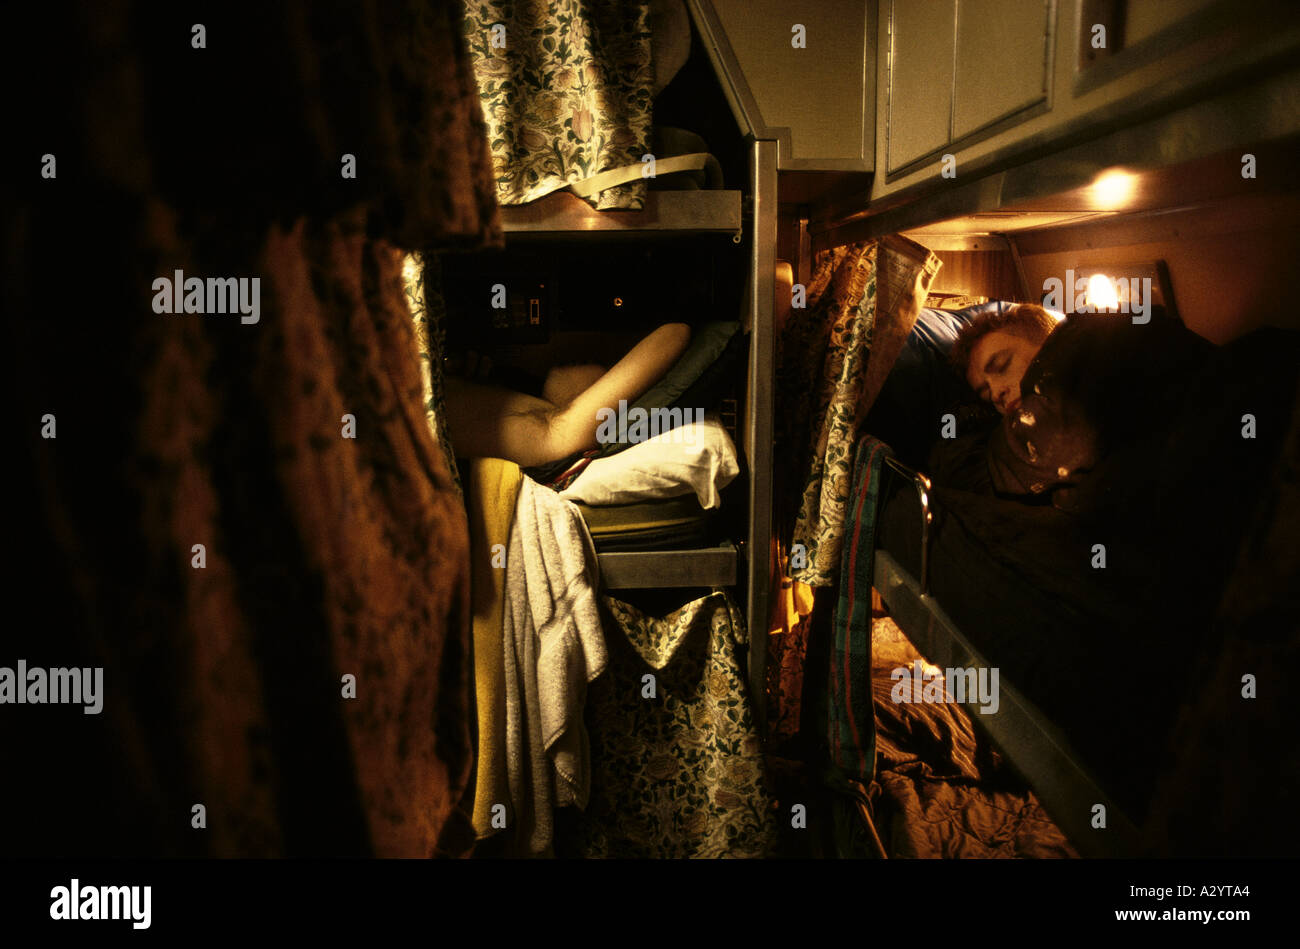 L'équipage du sous-marin de dormir sur des lits superposés dans une cabine à l'étroit Banque D'Images